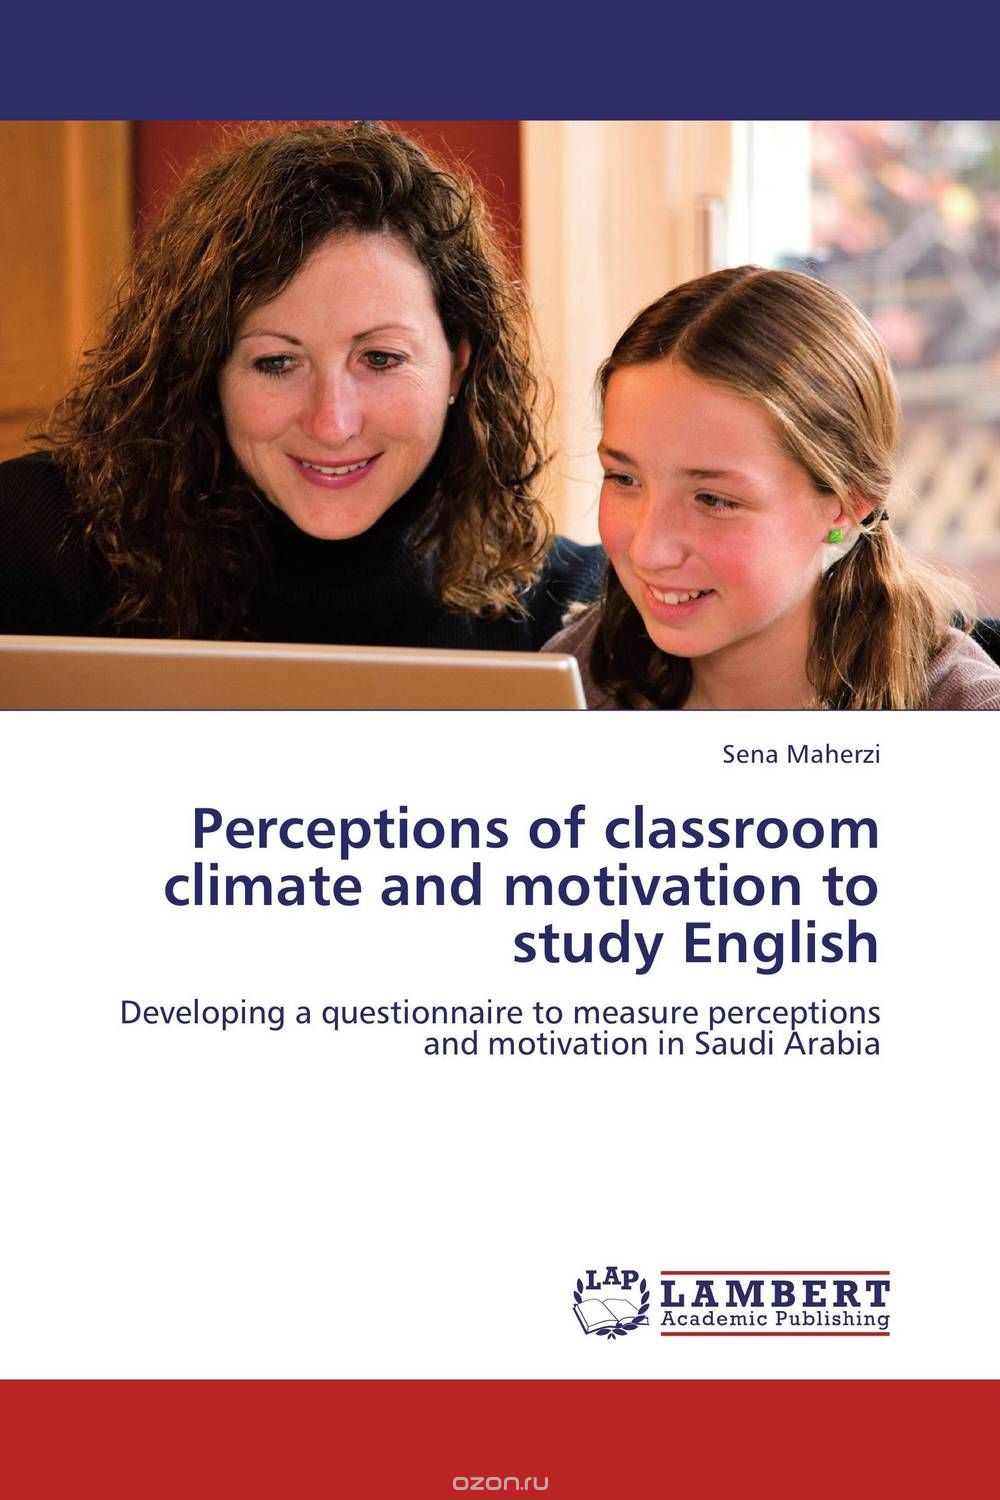 Скачать книгу "Perceptions of classroom climate and motivation to study English"